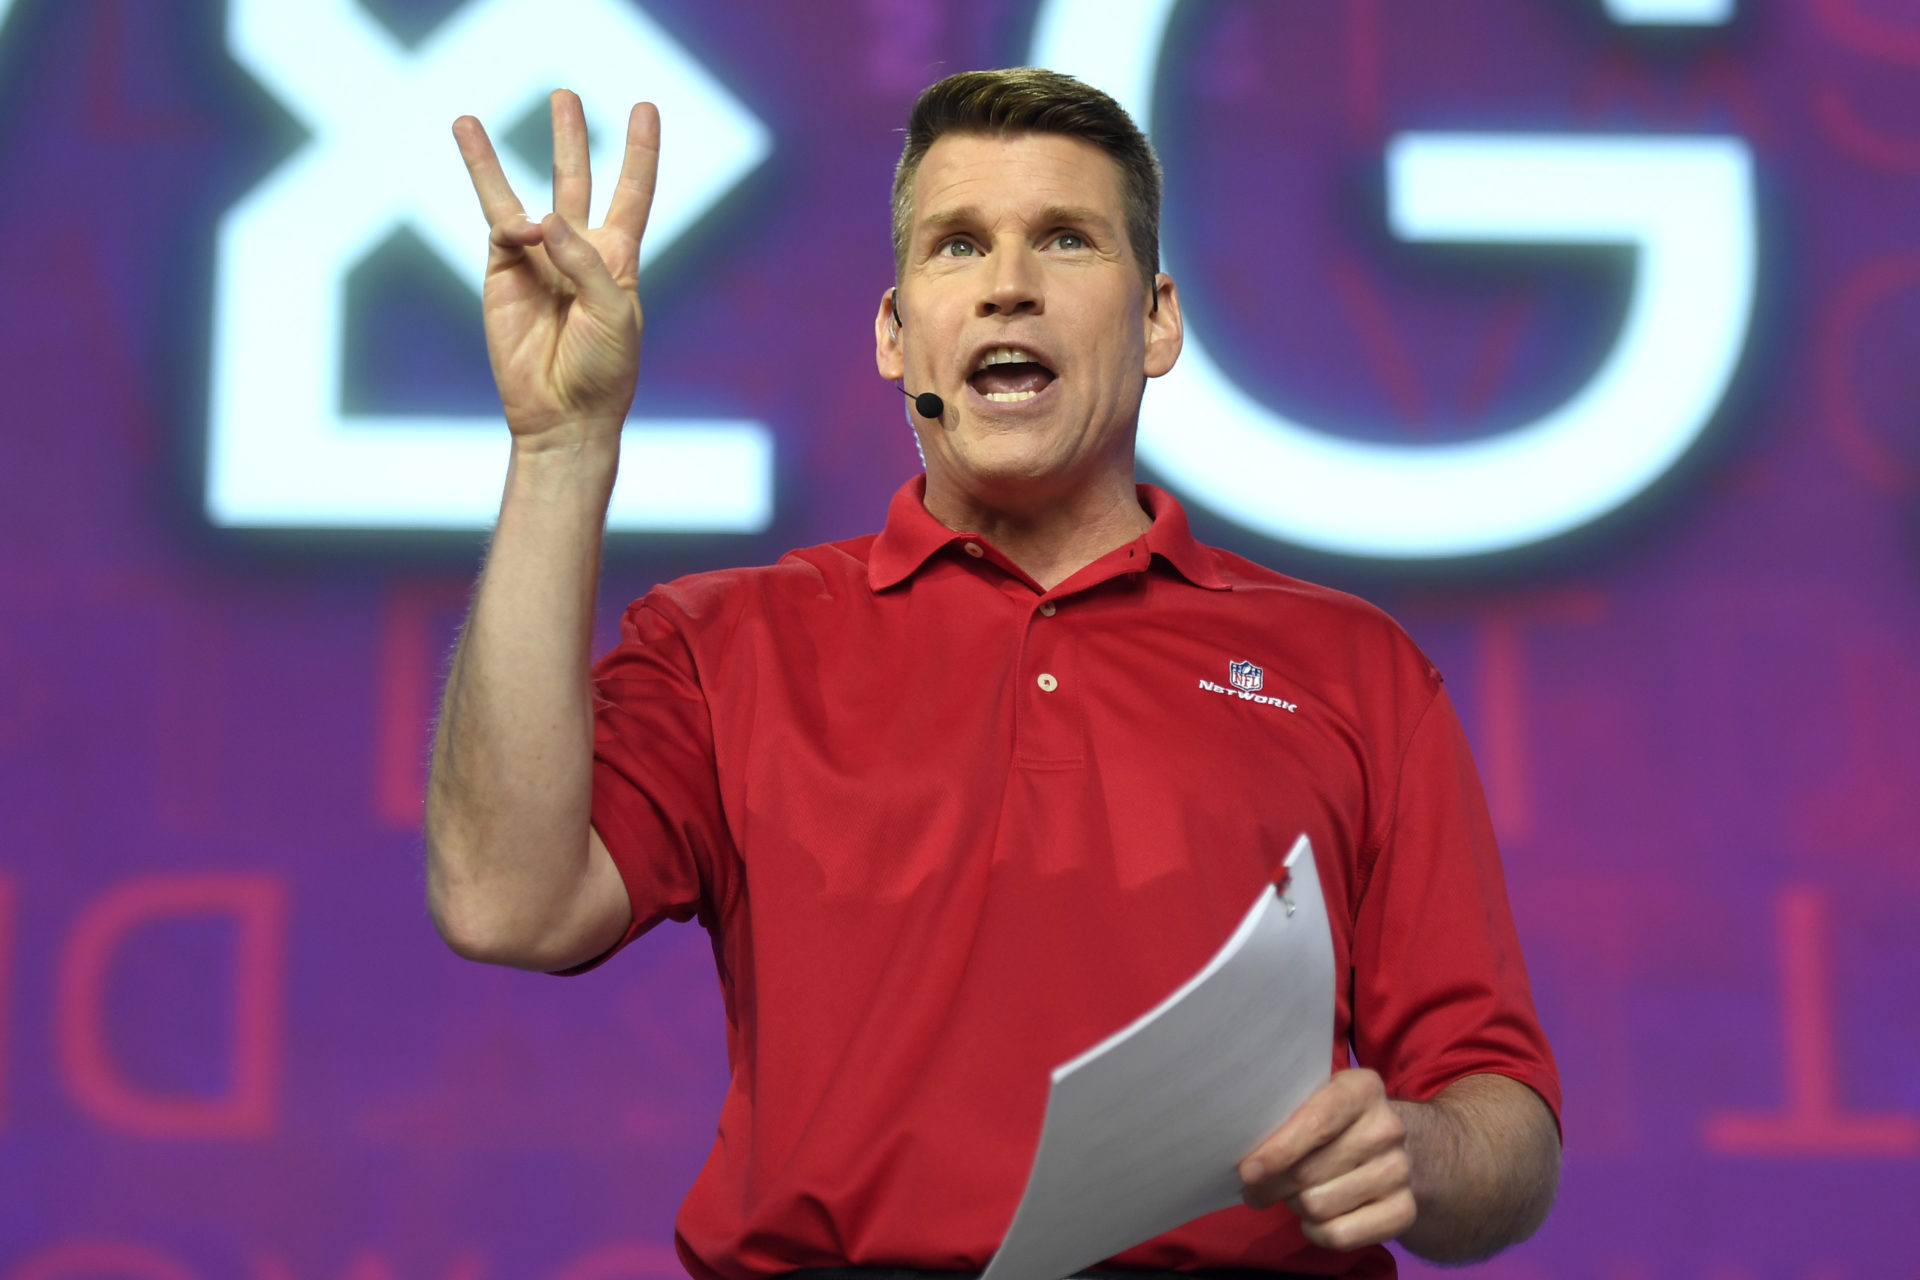 NFL RedZone host Scott Hanson’s salary and net worth explored